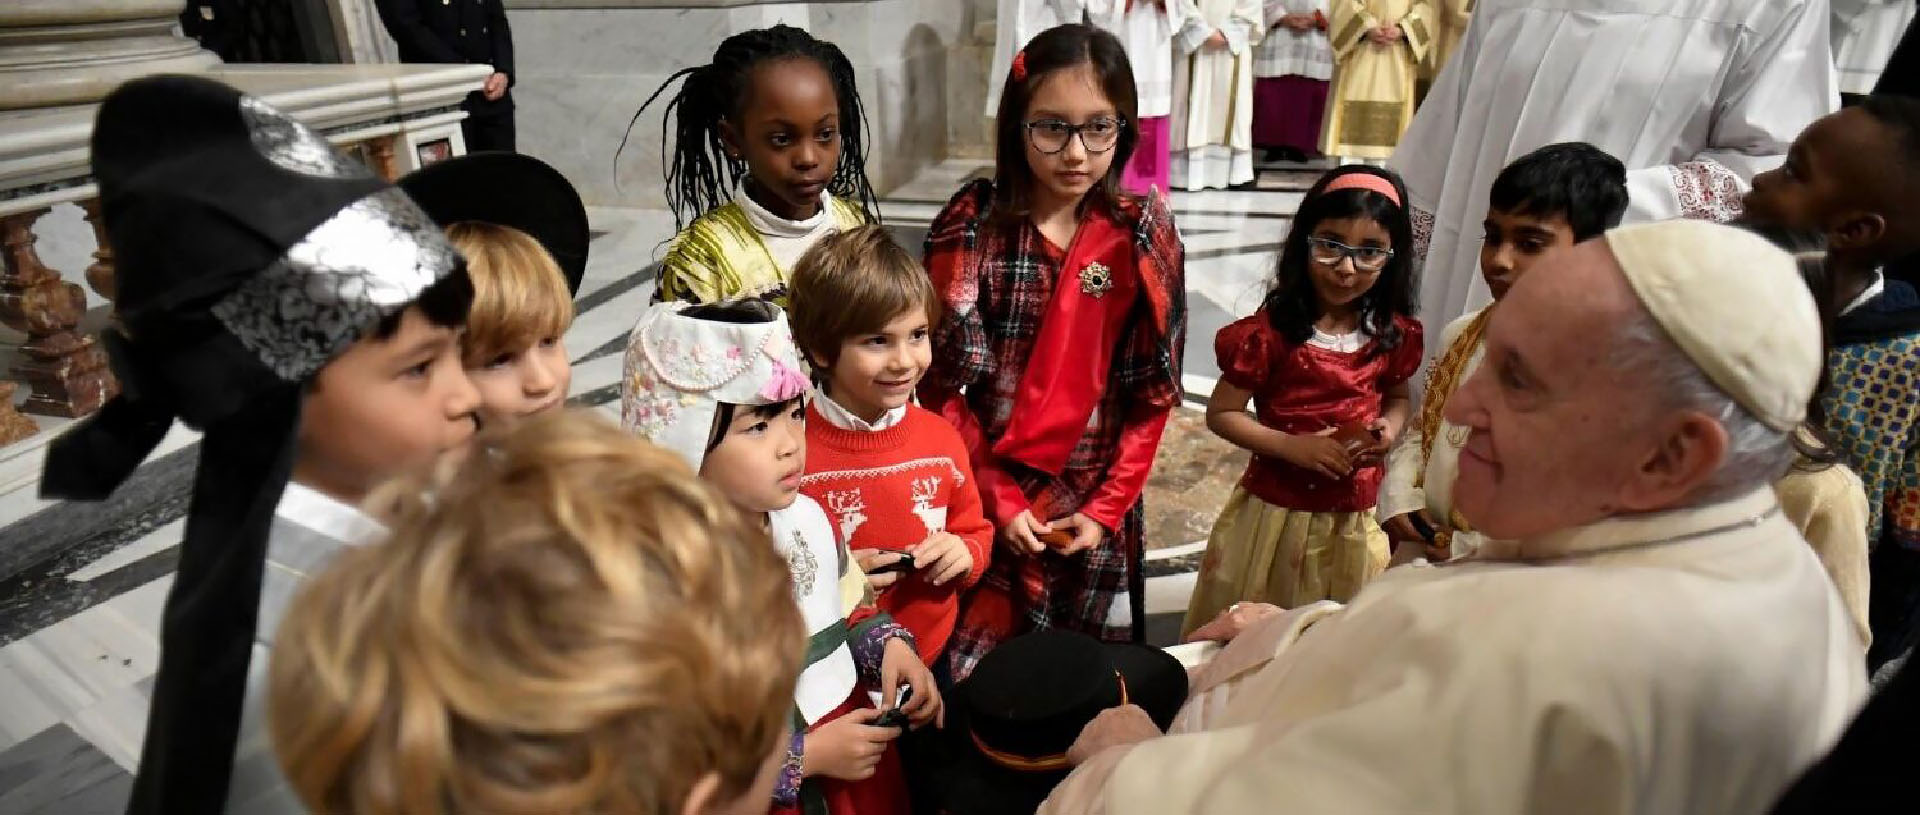 Le pape a rencontré 6'000 enfants en novembre dernier | © Vatican Media